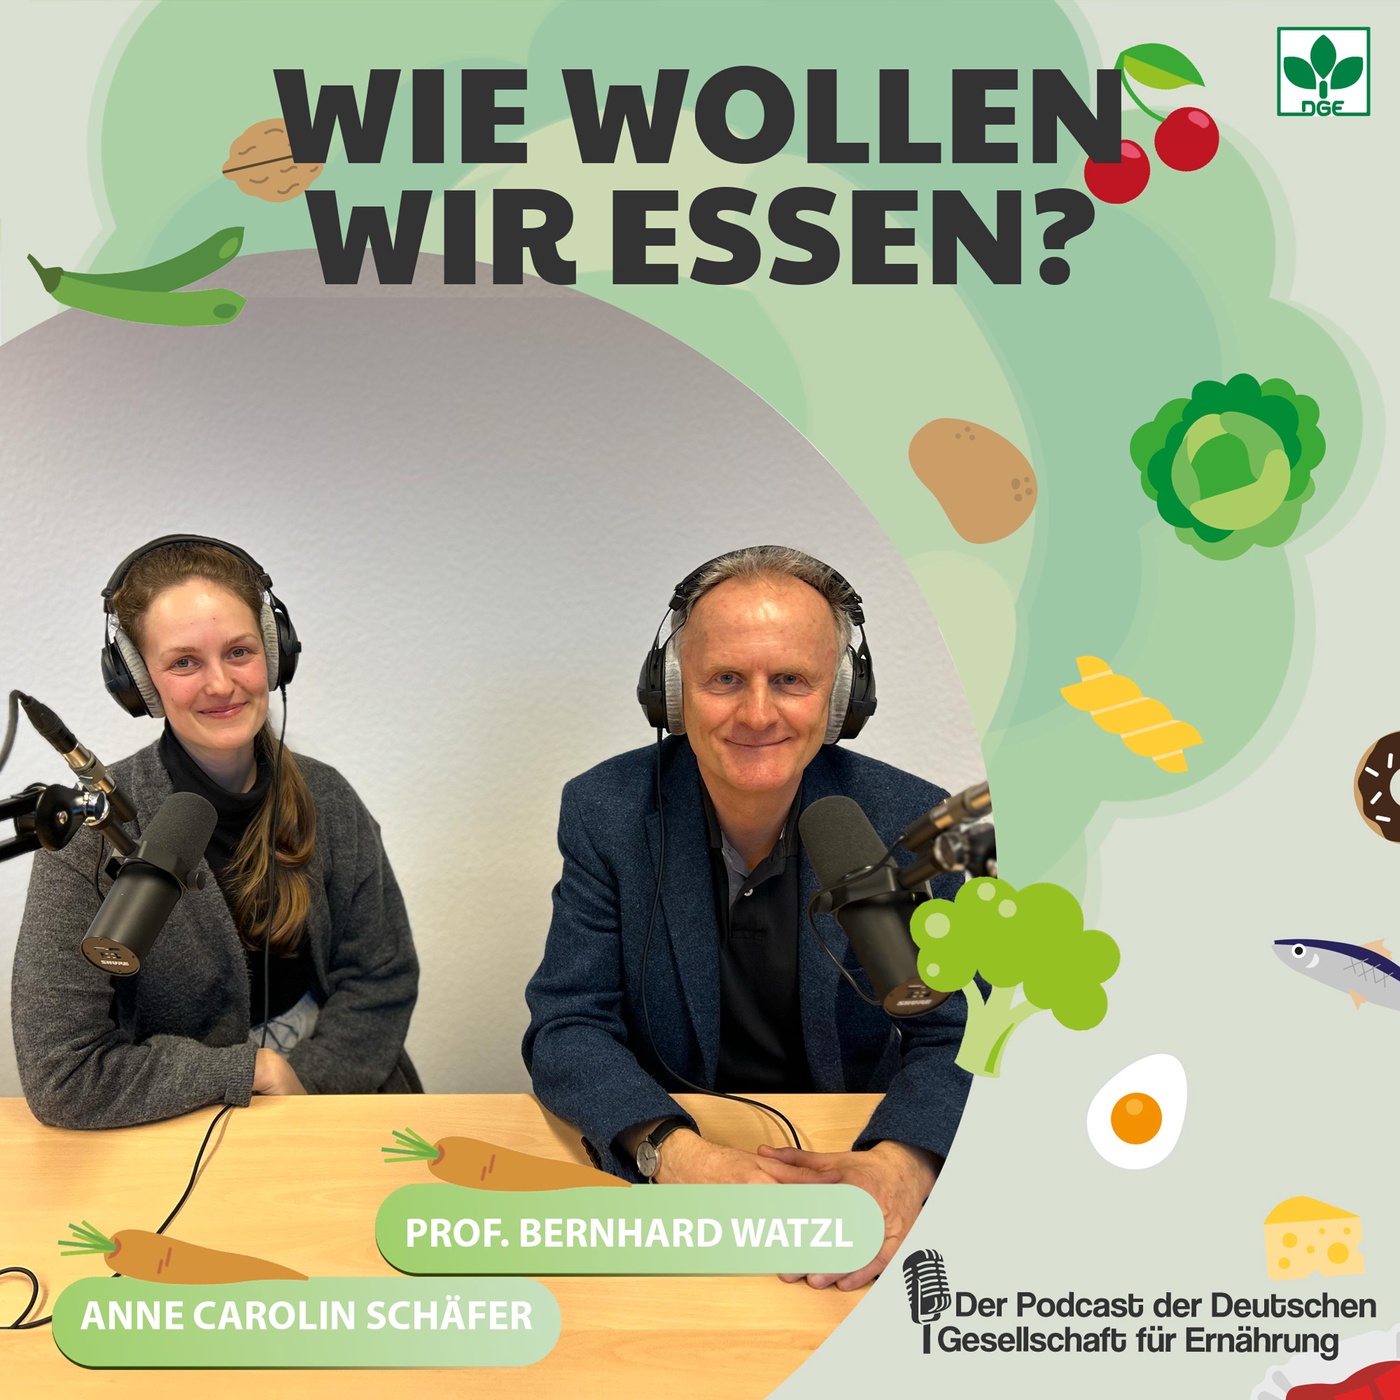 Bunt und gesund! – die neuen DGE-Ernährungsempfehlungen mit Anne Carolin Schäfer und Prof. Bernhard Watzl